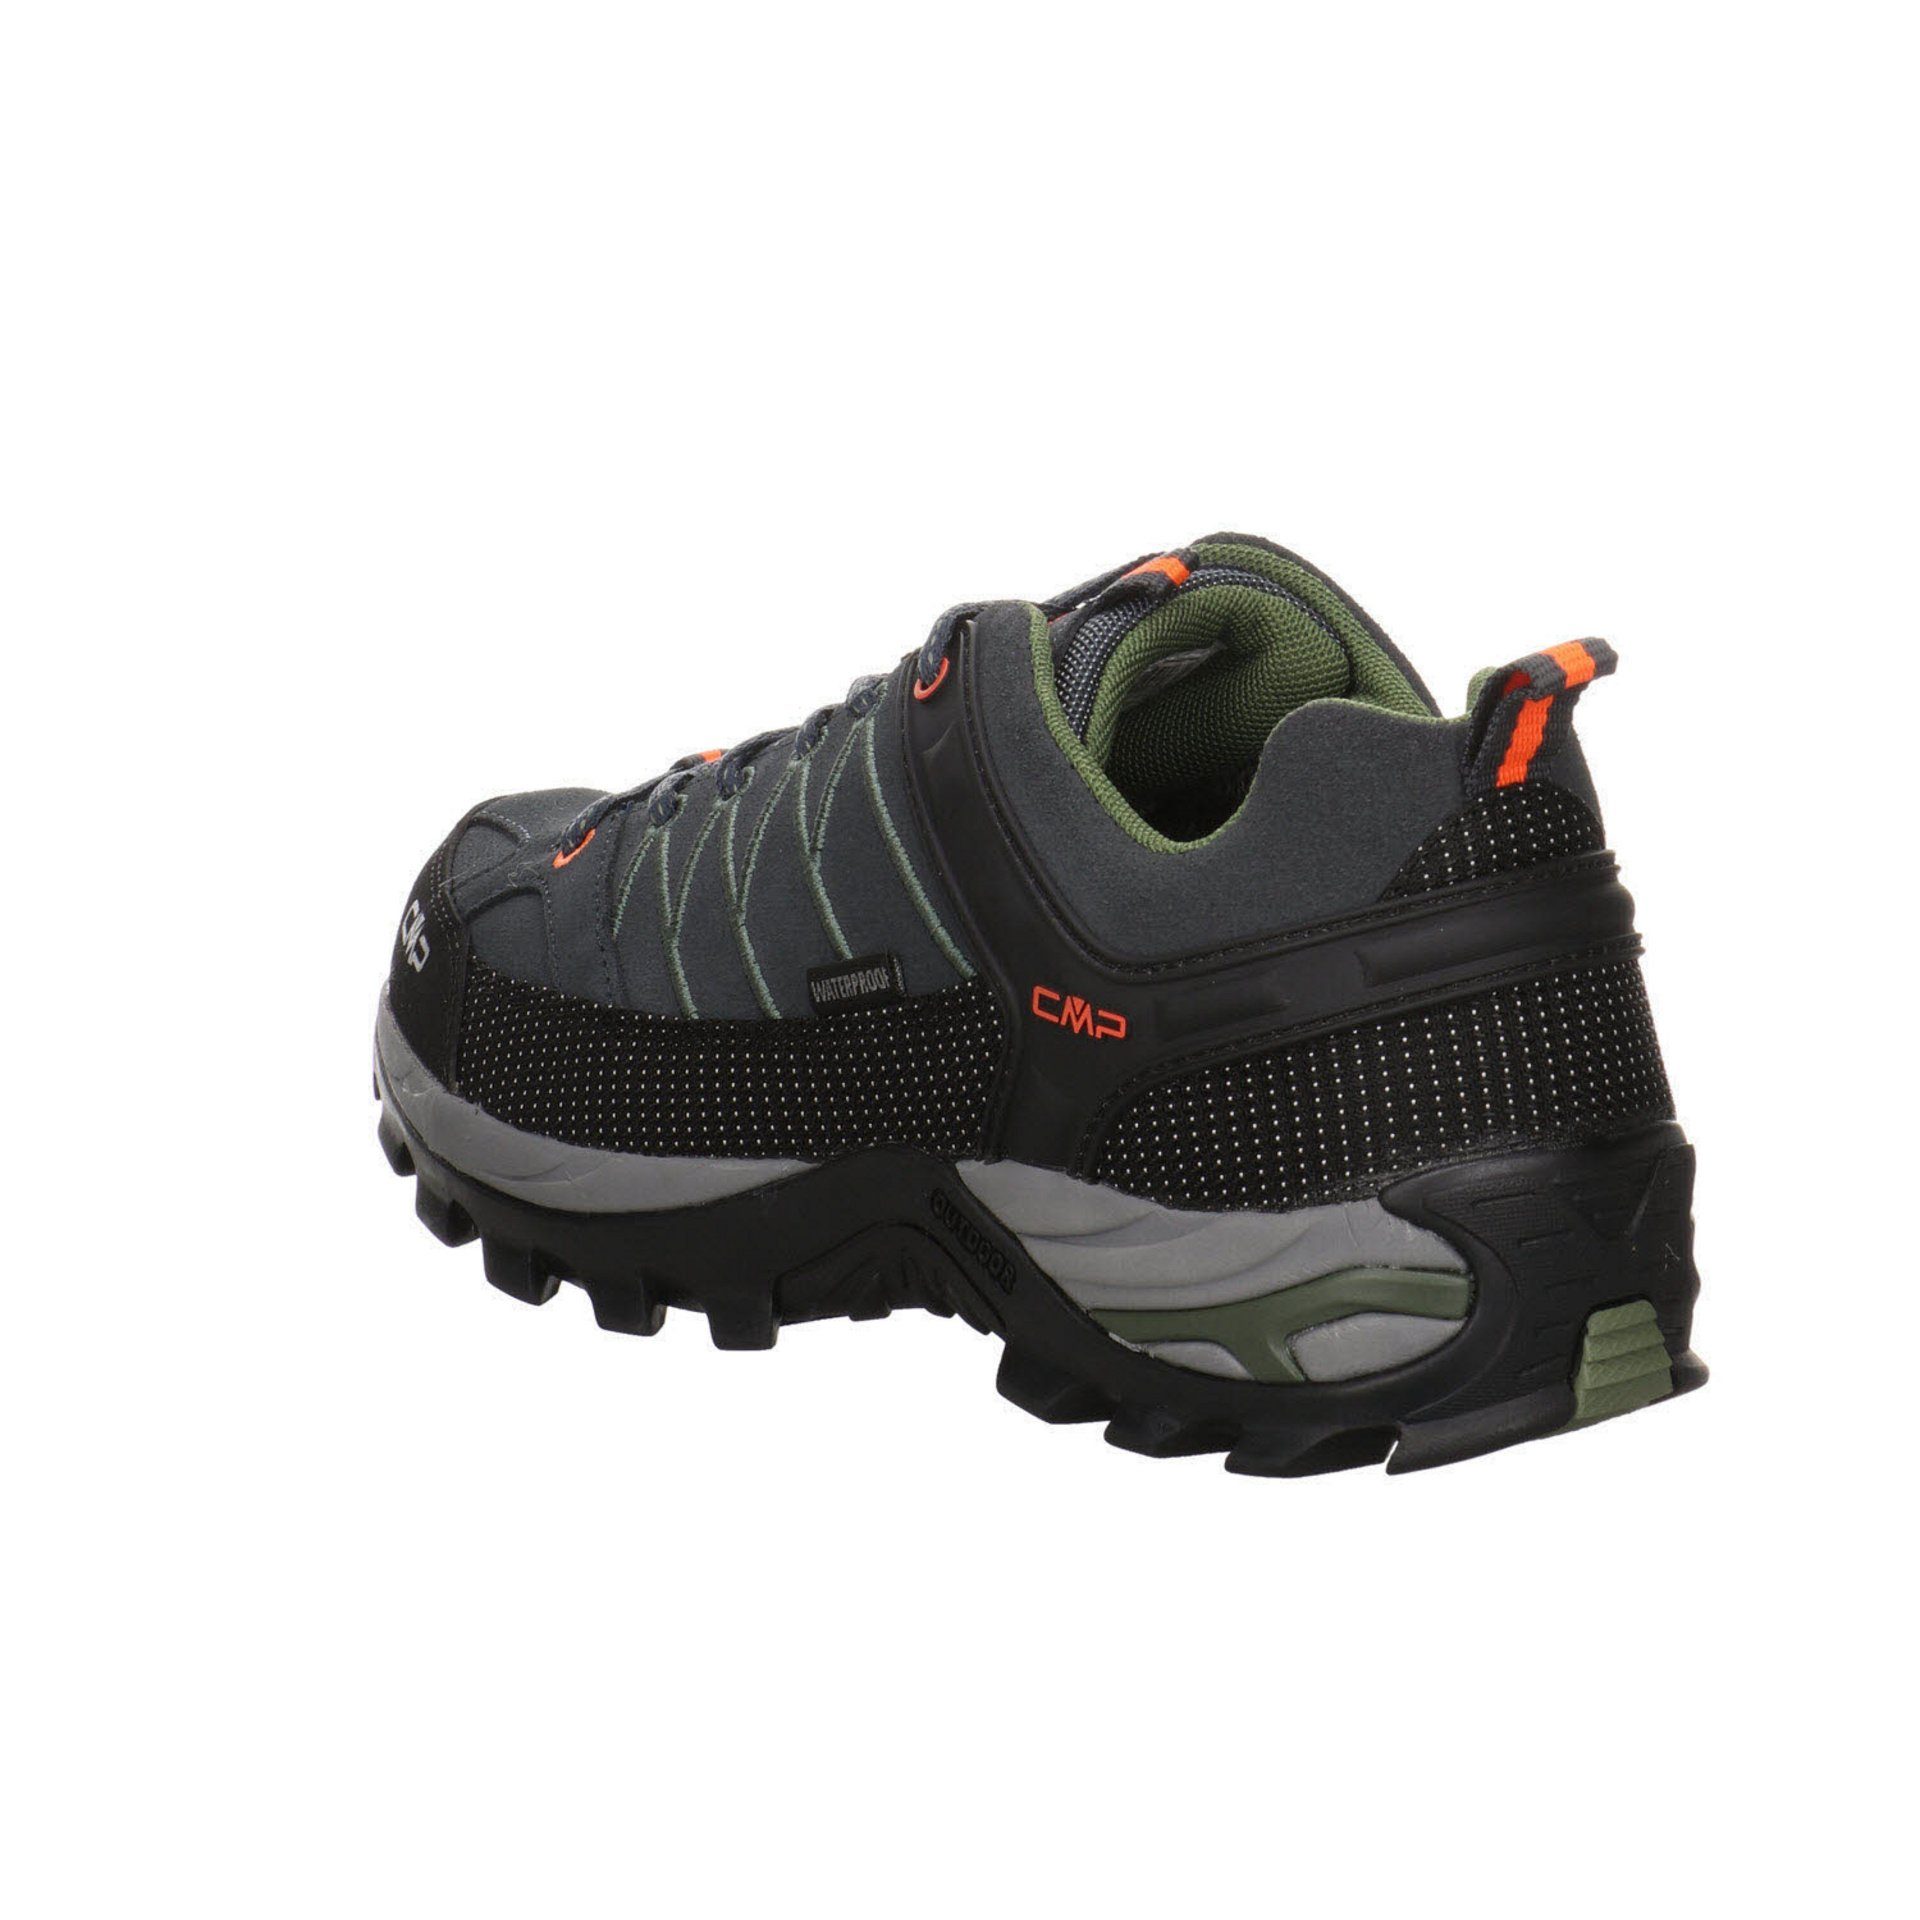 CMP Herren Outdoor Low Schuhe Grau Leder-/Textilkombination Rigel Outdoorschuh Outdoorschuh (03201805)